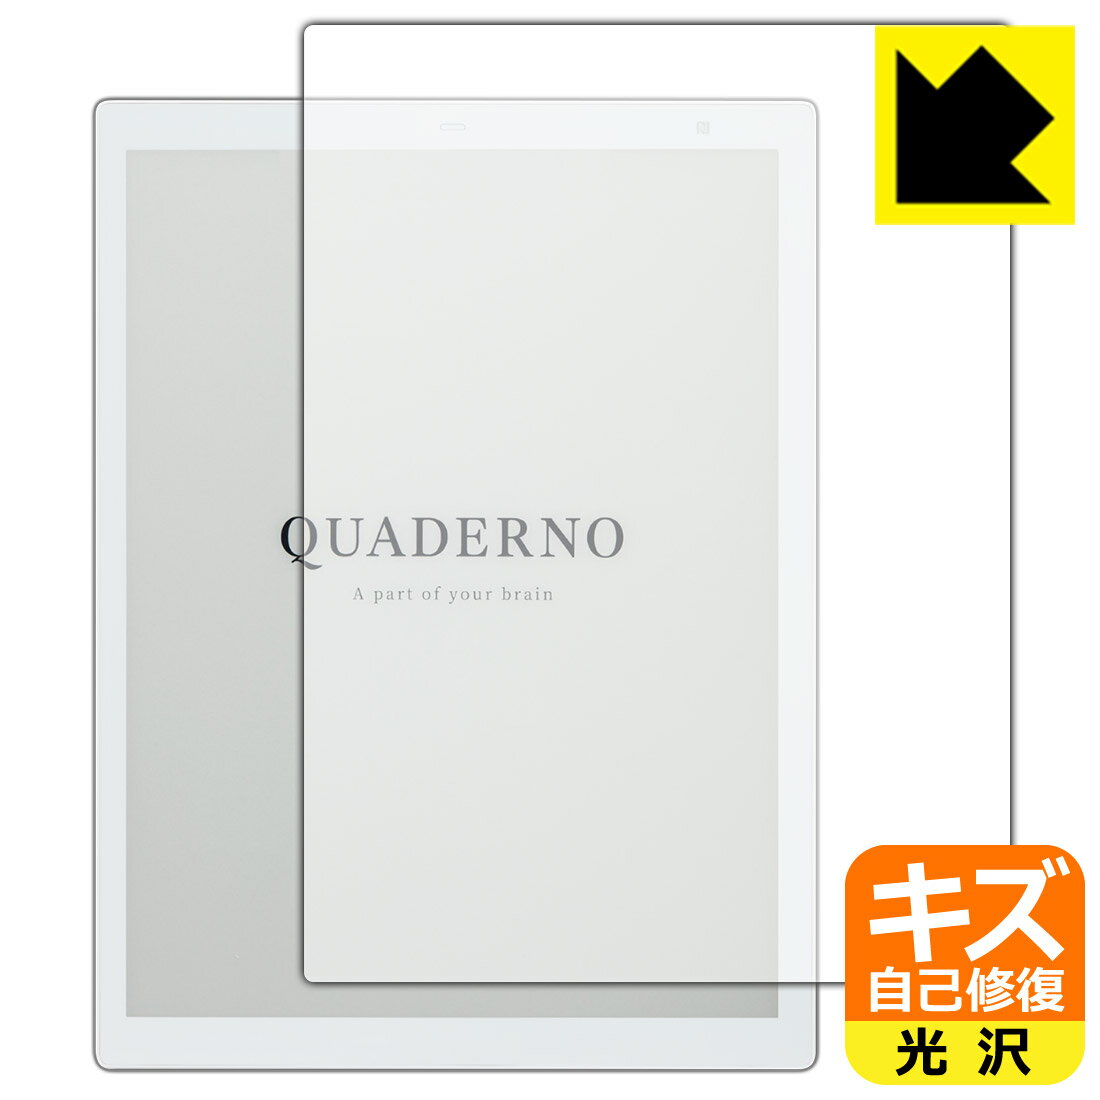 キズ自己修復保護フィルム 電子ペーパー QUADERNO A4(クアデルノ A4) (Gen.2) FMVDP41 日本製 自社製造直販